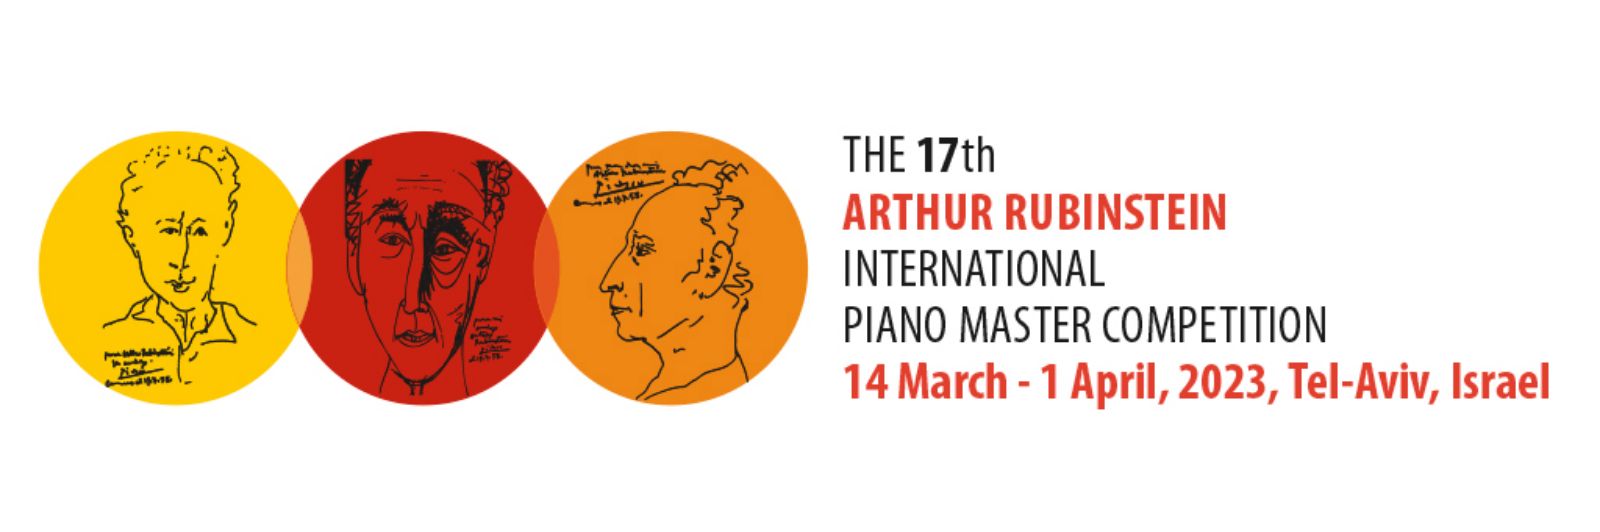 14 марта в Тель-Авиве откроется одно из самых престижных состязаний пианистов – Международный конкурс имени Артура Рубинштейна